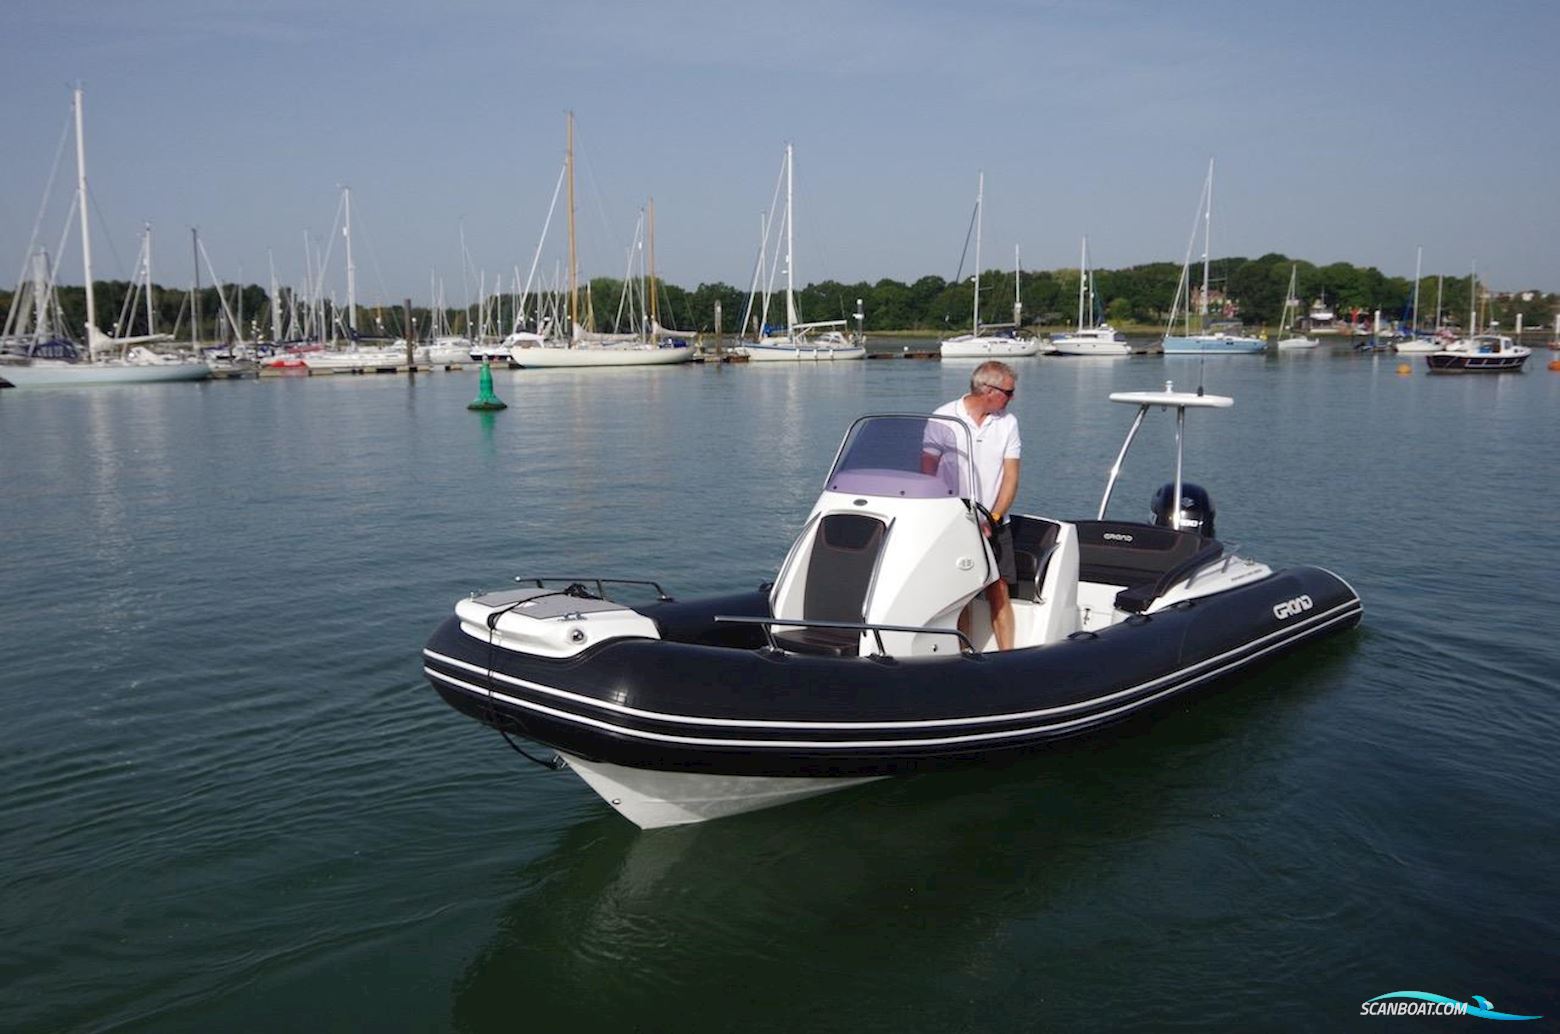 Grand G650 Schlauchboot / Rib 2020, mit Suzuki motor, England